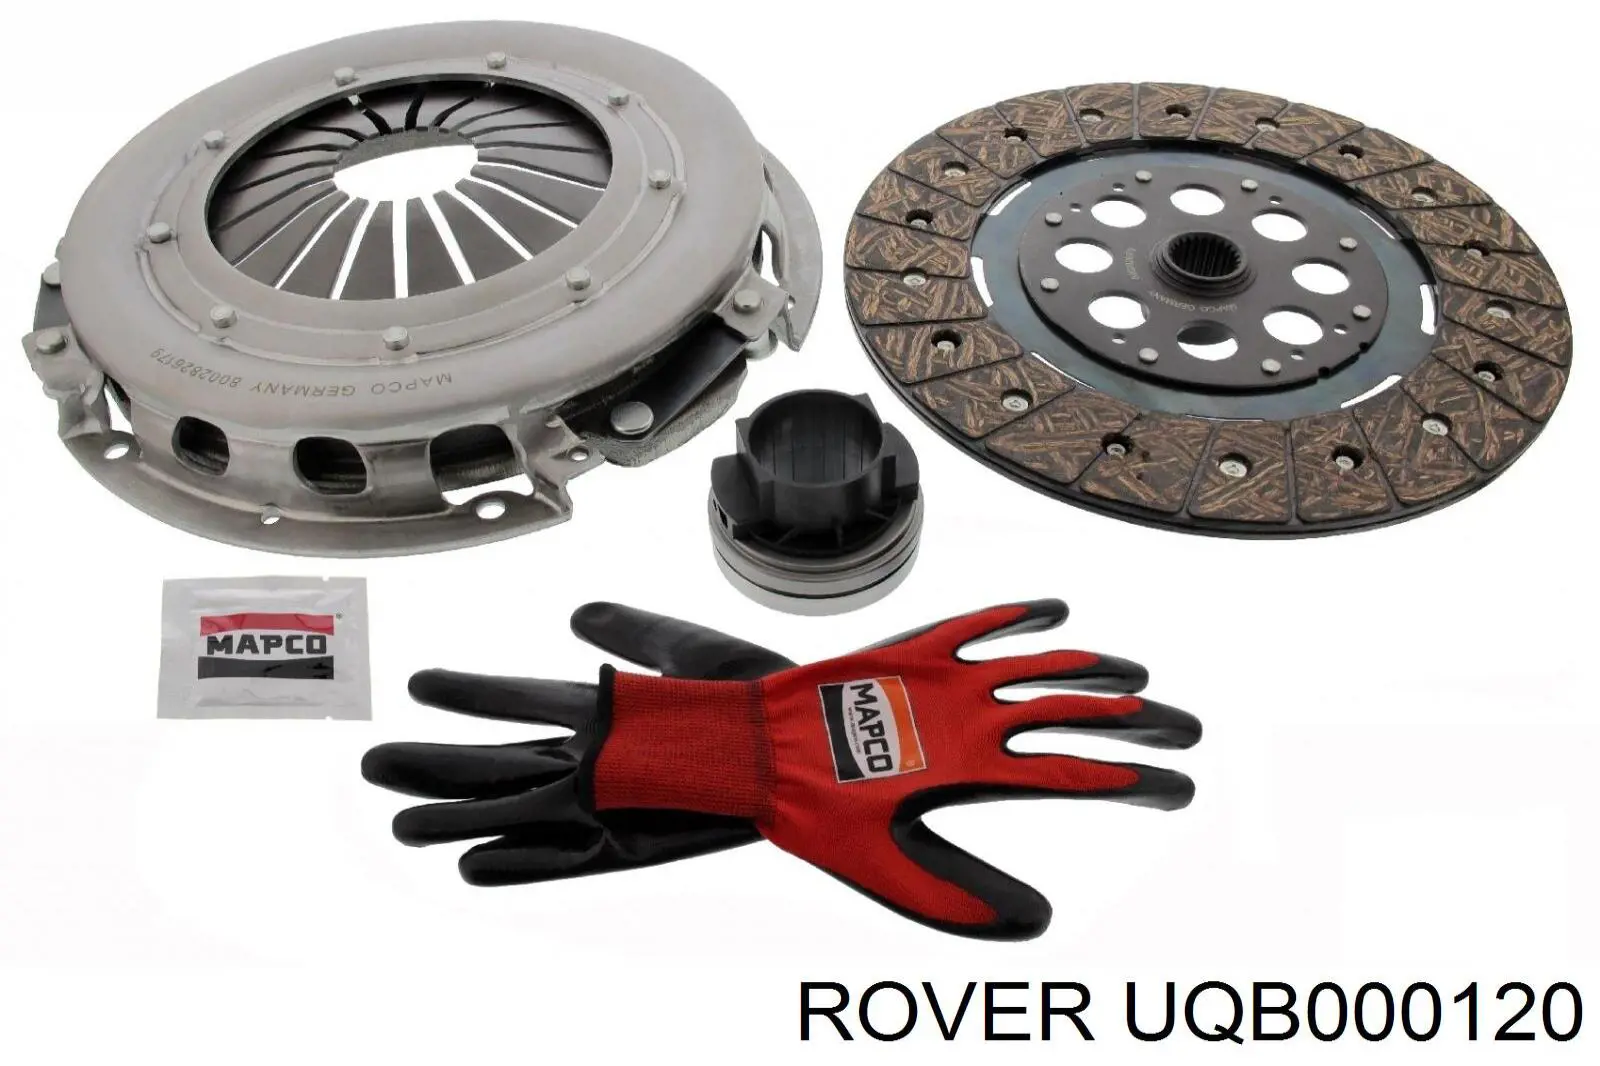 UQB000120 Rover disco de embrague